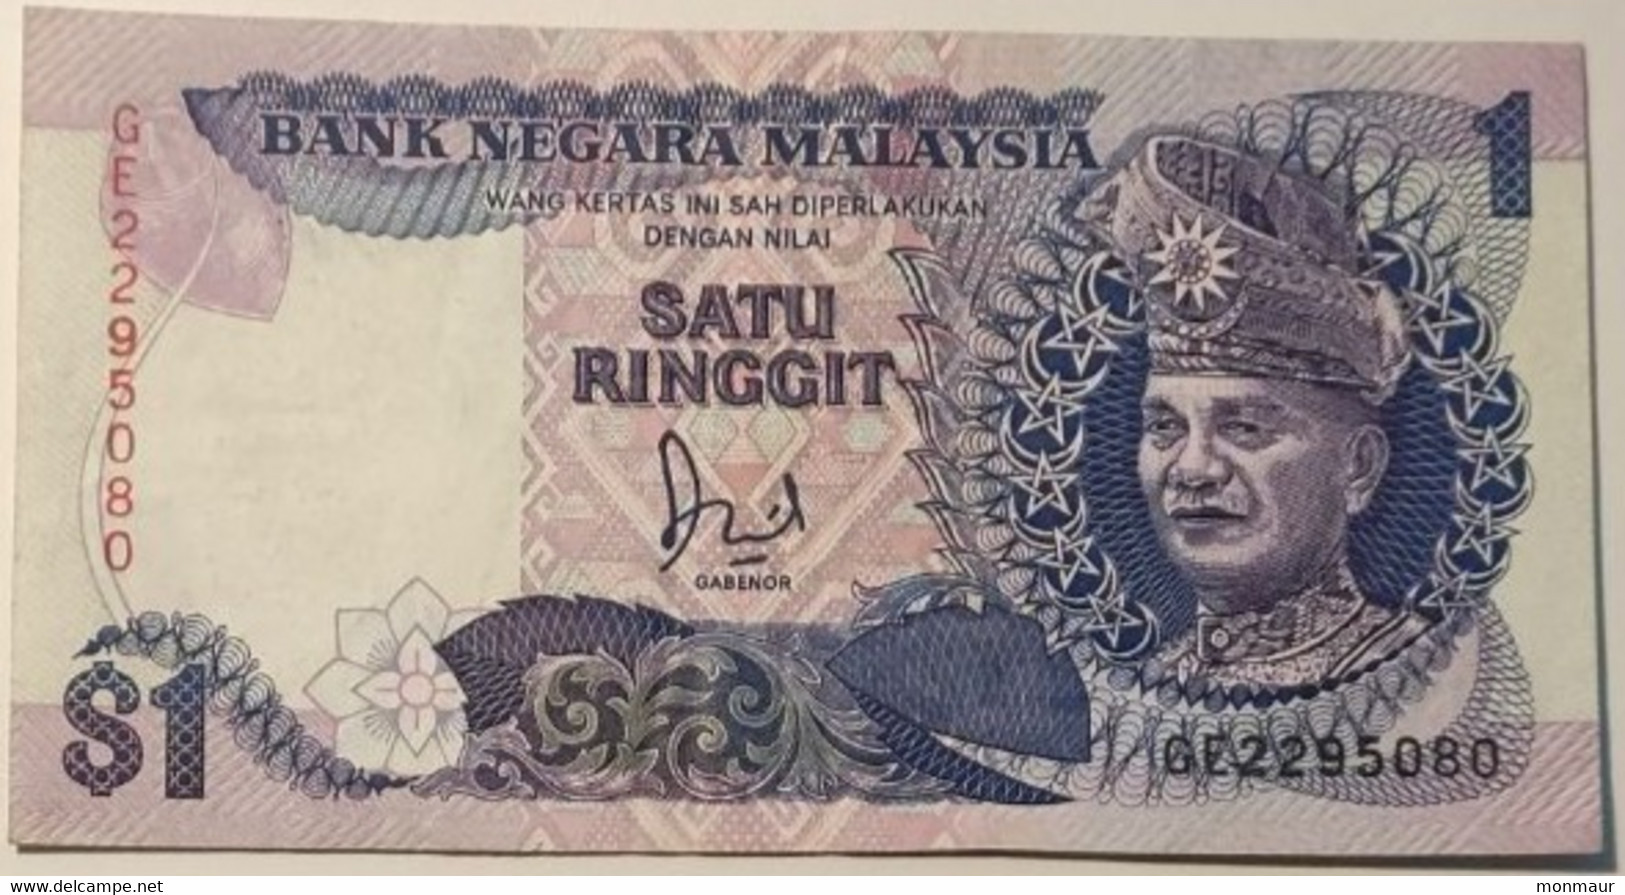 MALESIA 1989  1 RINGGIT - Malasia